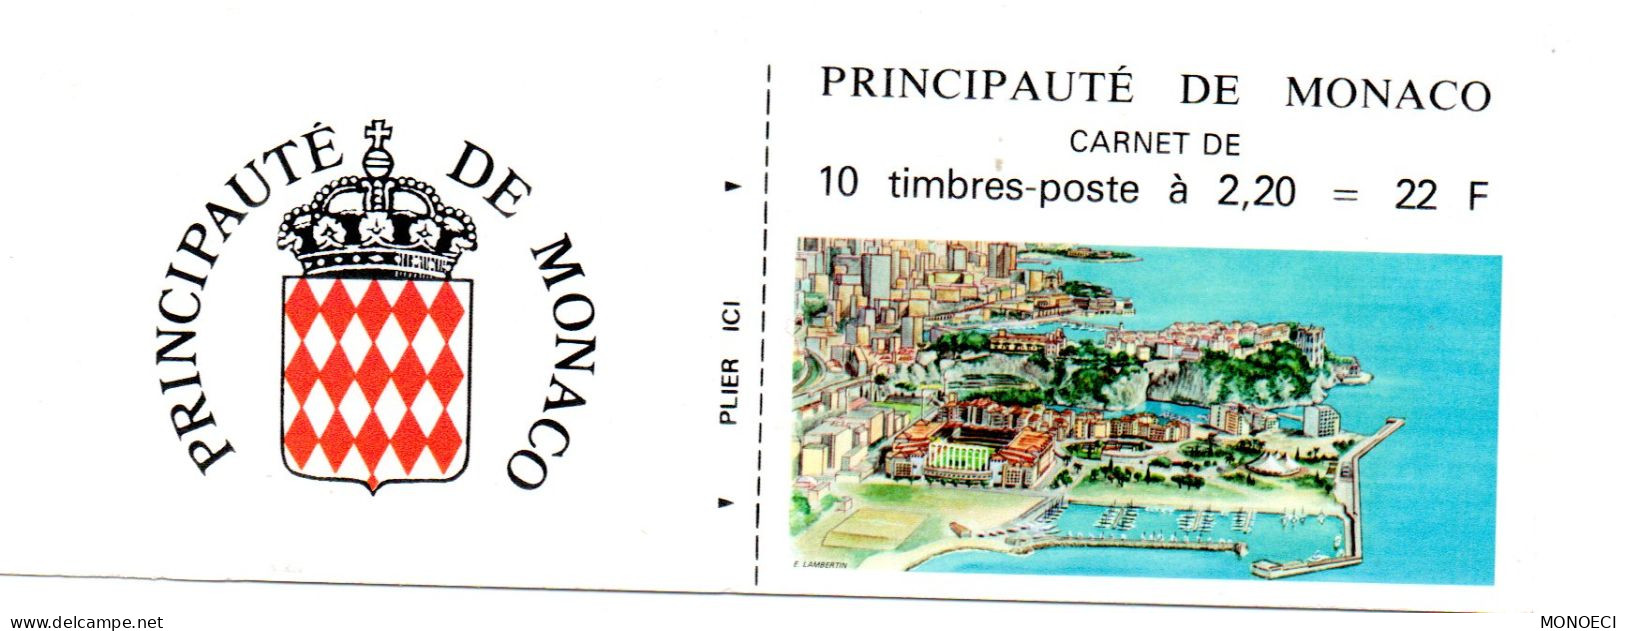 MONACO --  Monégasque -- Carnet -- Timbres 2,20 Francs 1987 -- Armoiries Stylisées - Booklets